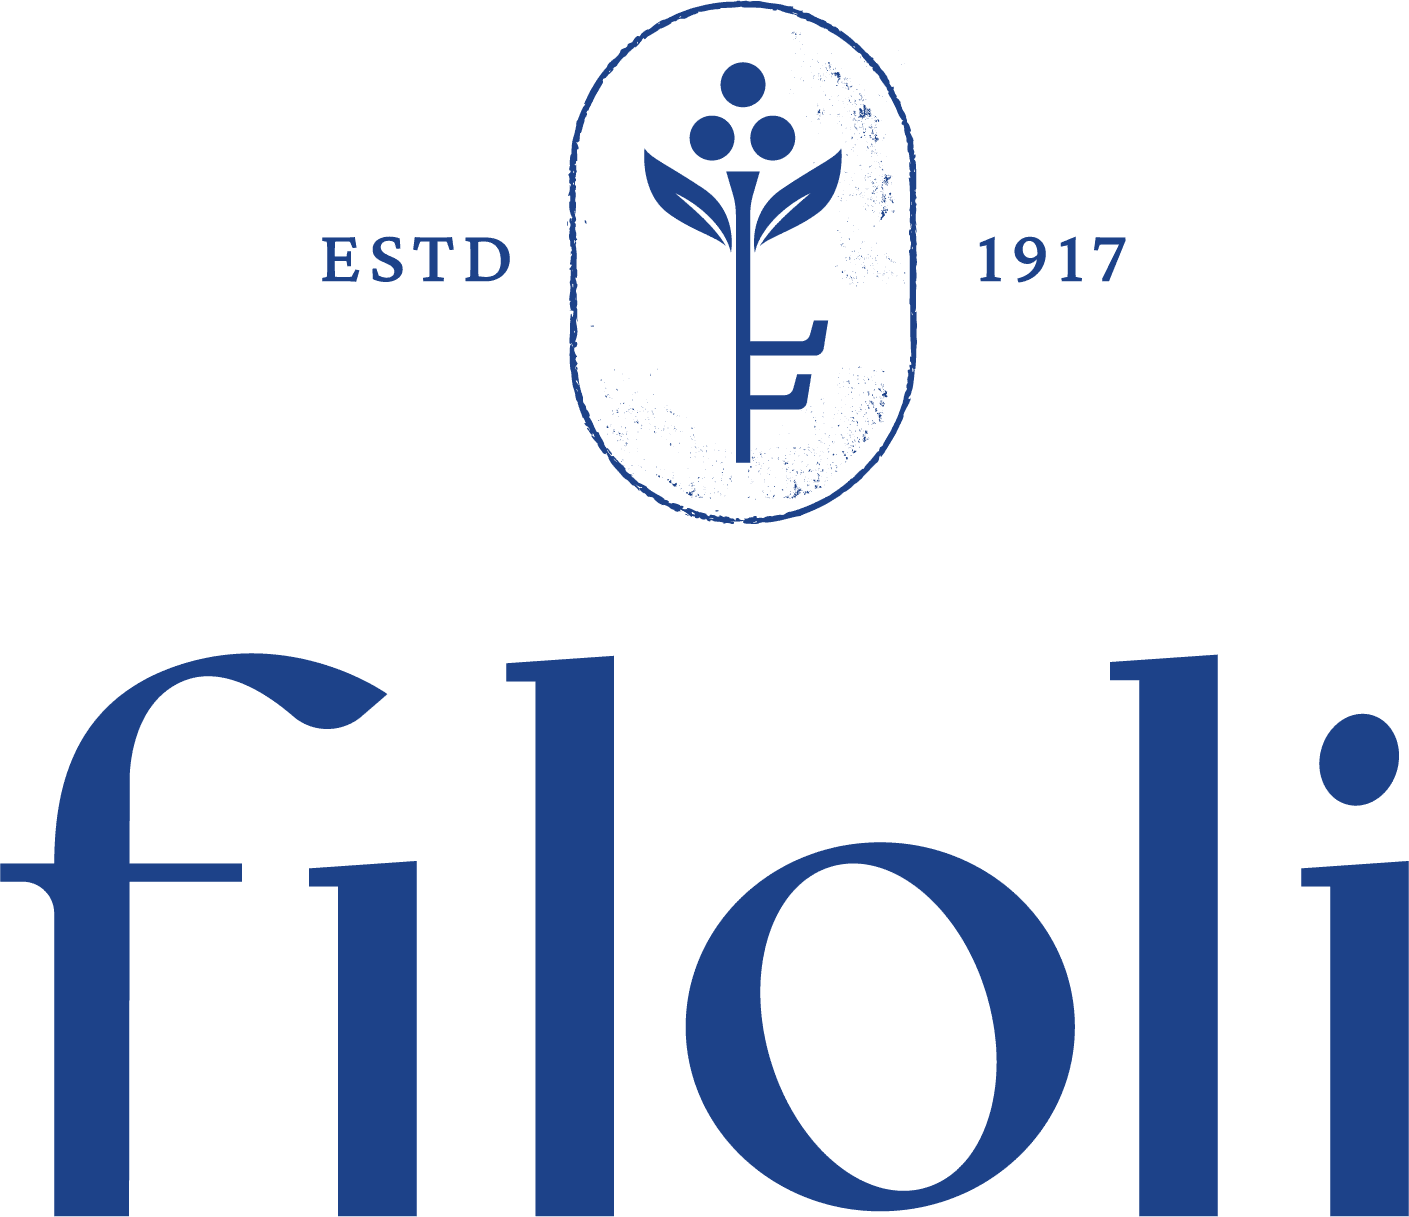 Filoli-Logo-color-FullLockup.png